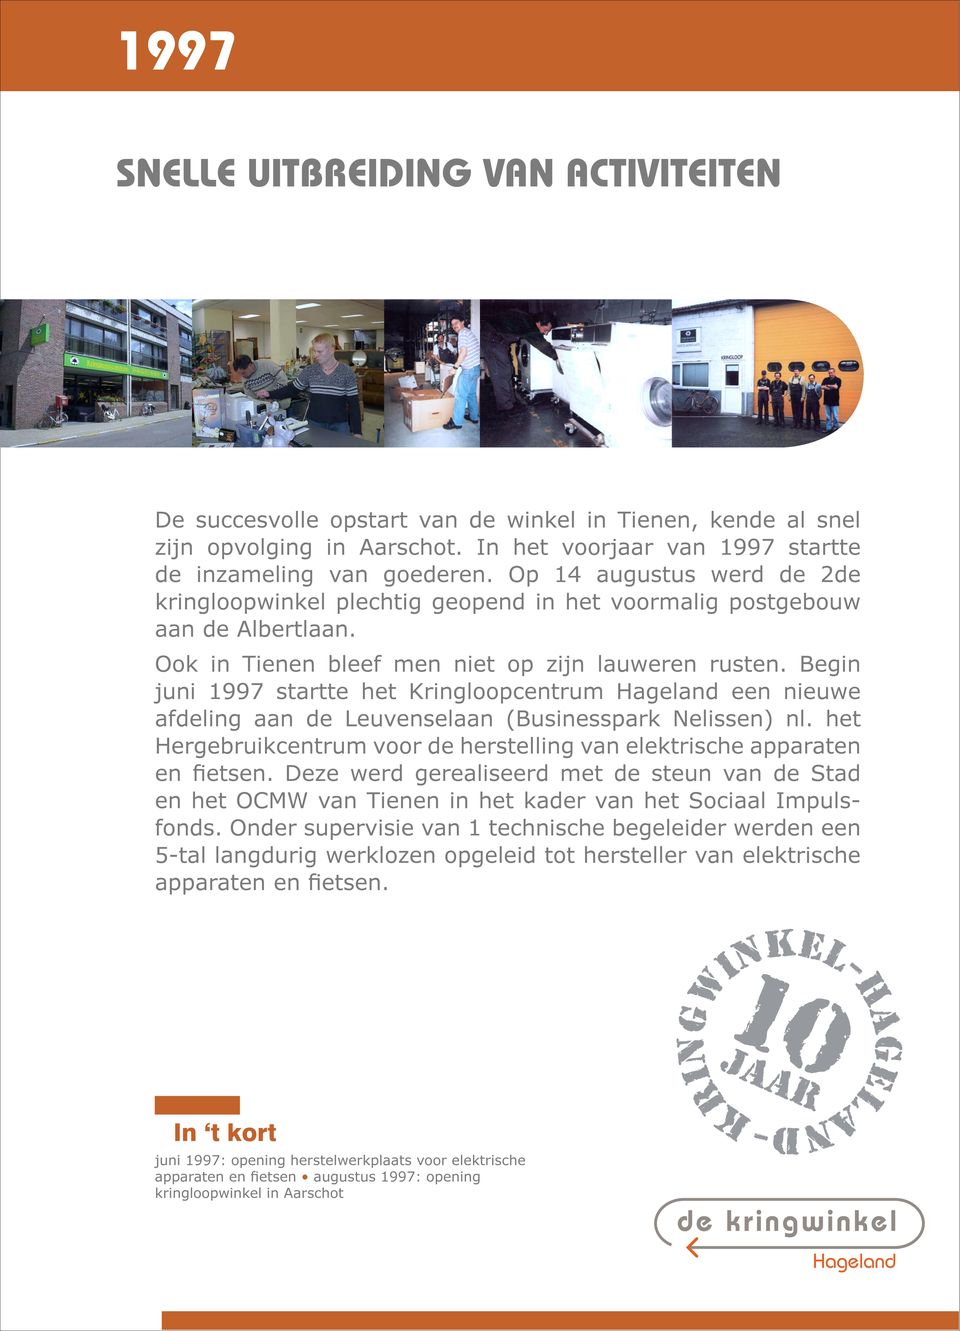 Begin juni 1997 startte het Kringloopcentrum Hageland een nieuwe afdeling aan de Leuvenselaan (Businesspark Nelissen) nl. het Hergebruikcentrum voor de herstelling van elektrische apparaten en Þetsen.